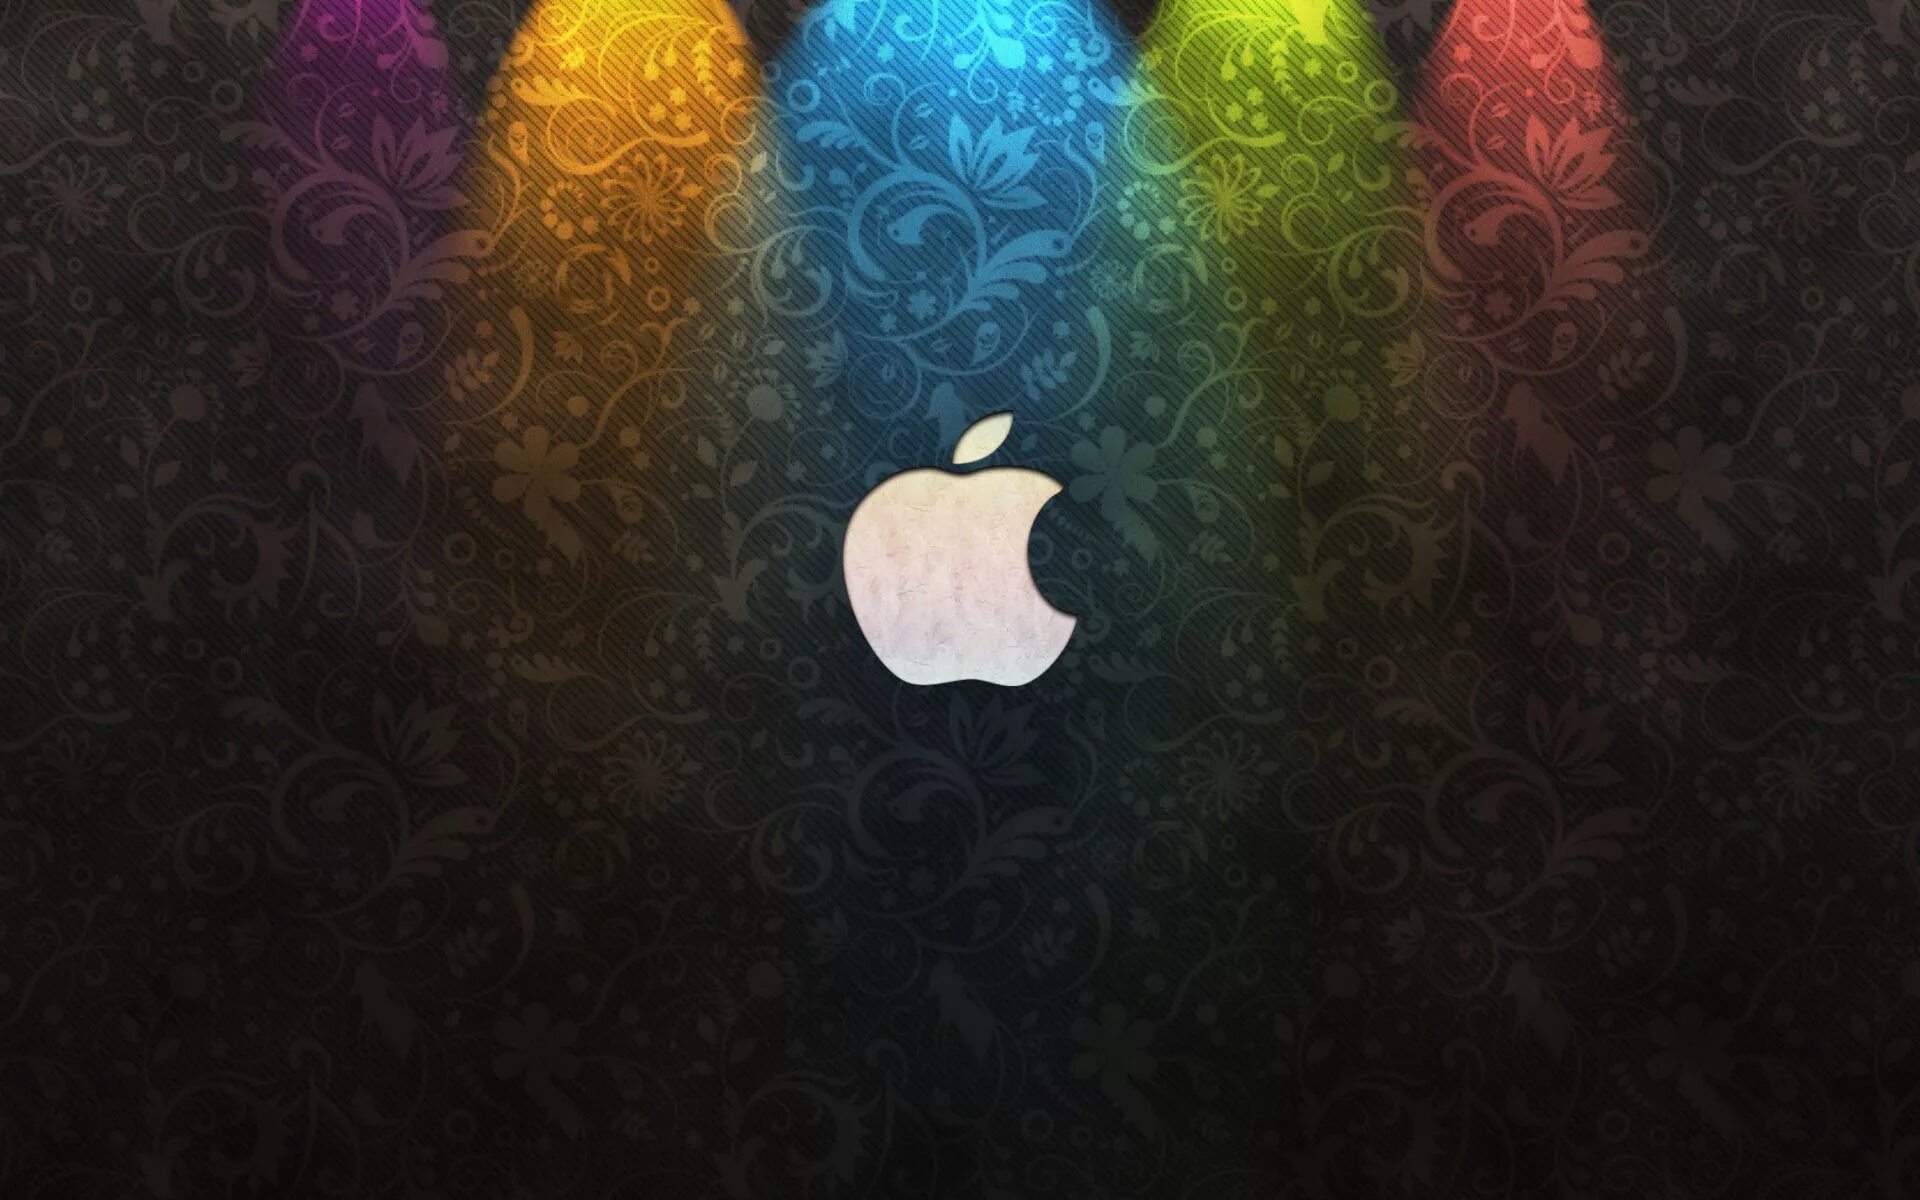 Обои эппл. Обои Apple. Обои для Айпада. Фон на айфон. Красивые заставки на айпад.